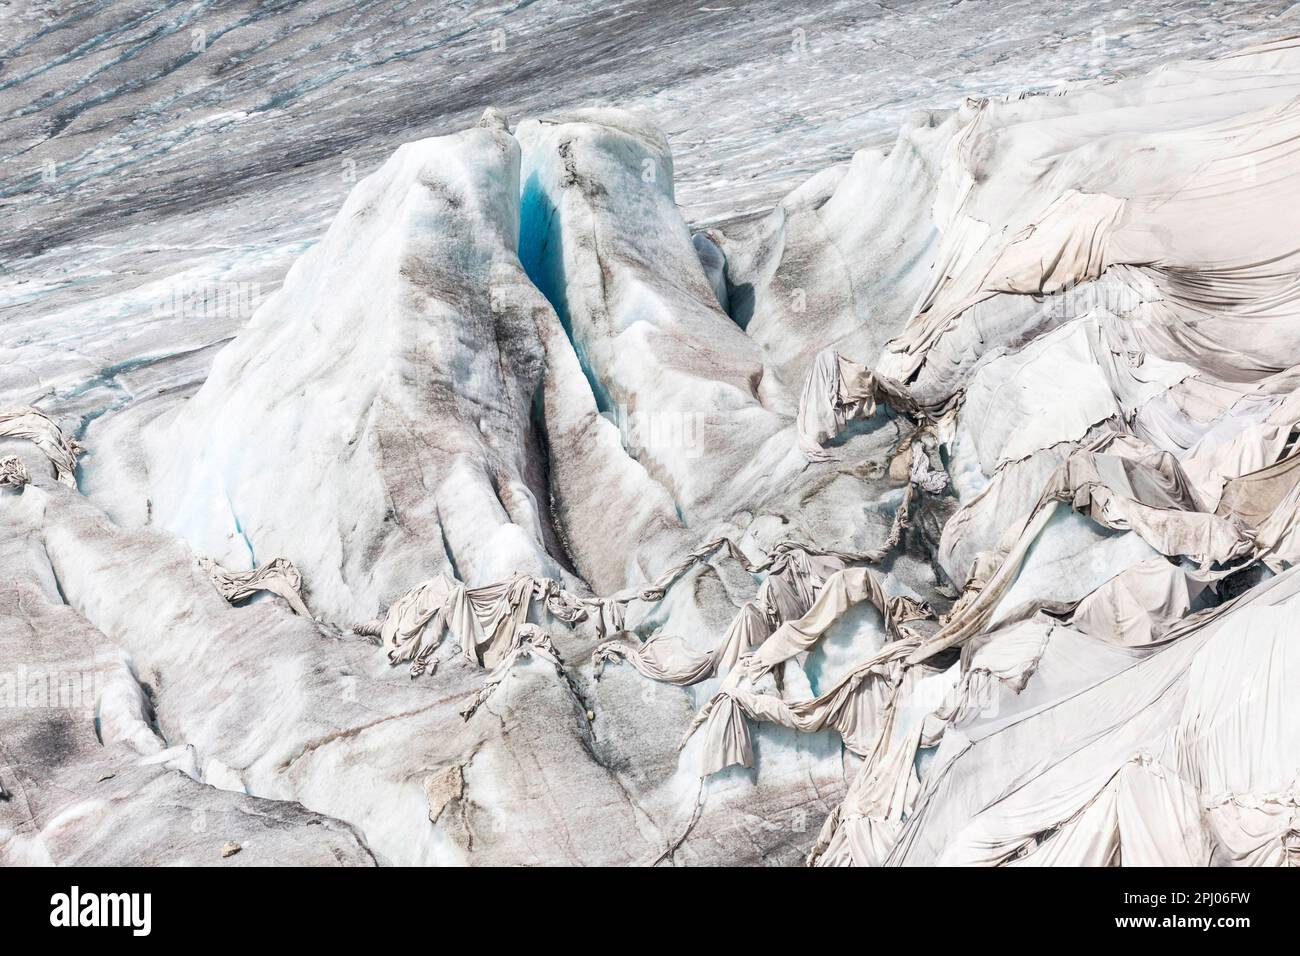 Rhone-Gletscher in den Alpen von Uri, Landschaft, ist der Gletscher teilweise mit Laken verbunden, um den Schmelzprozess im Laufe des Klimas zu verlangsamen Stockfoto